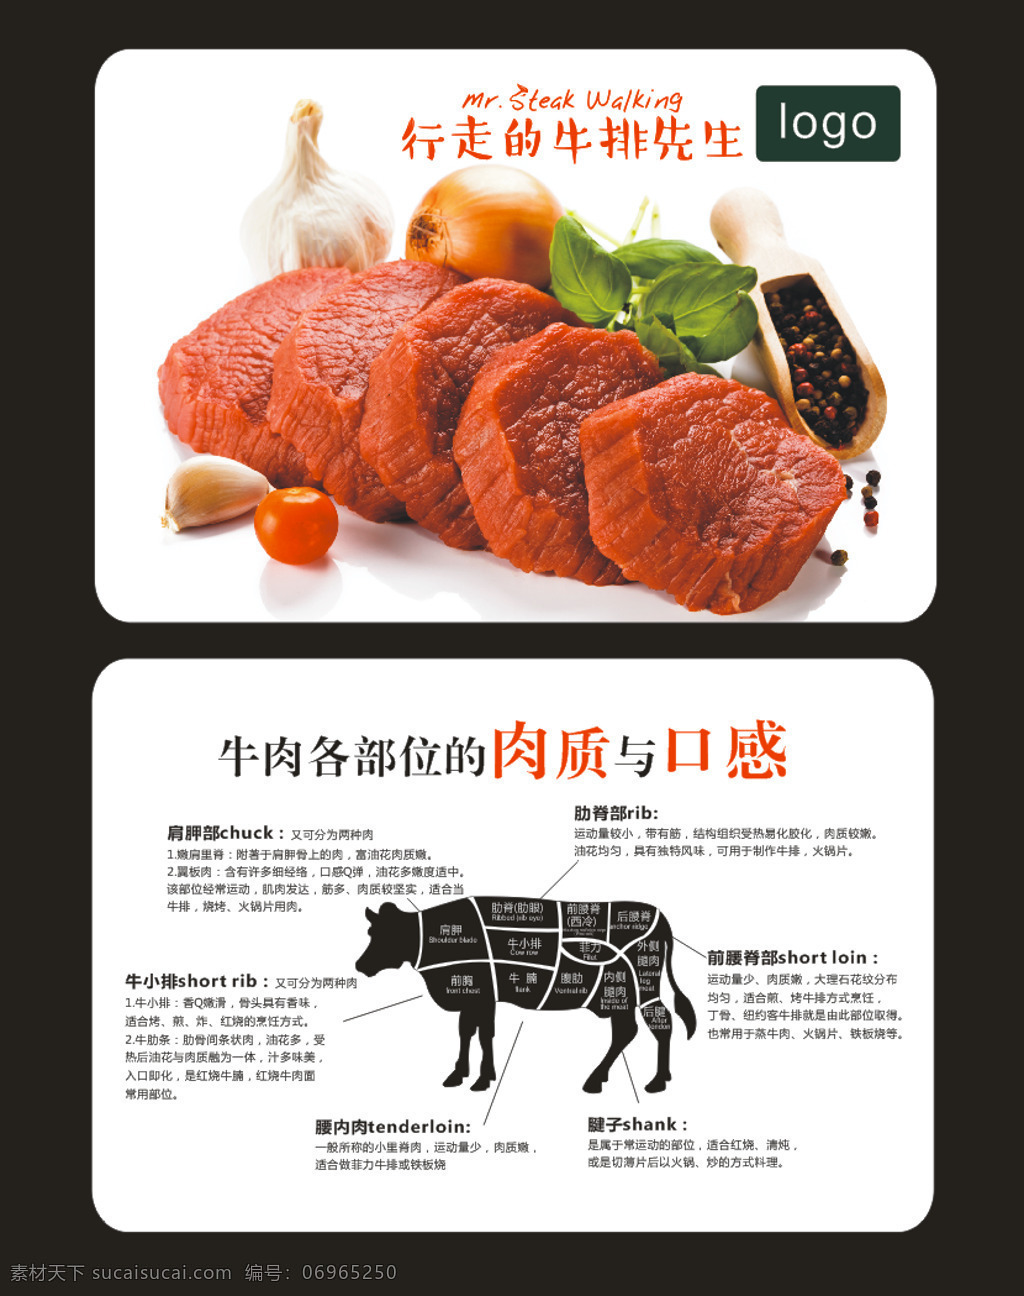 牛肉 宣传 介绍 卡片 牛排 牛的分解图 牛的部位 牛 肉质 口感 宣传卡片